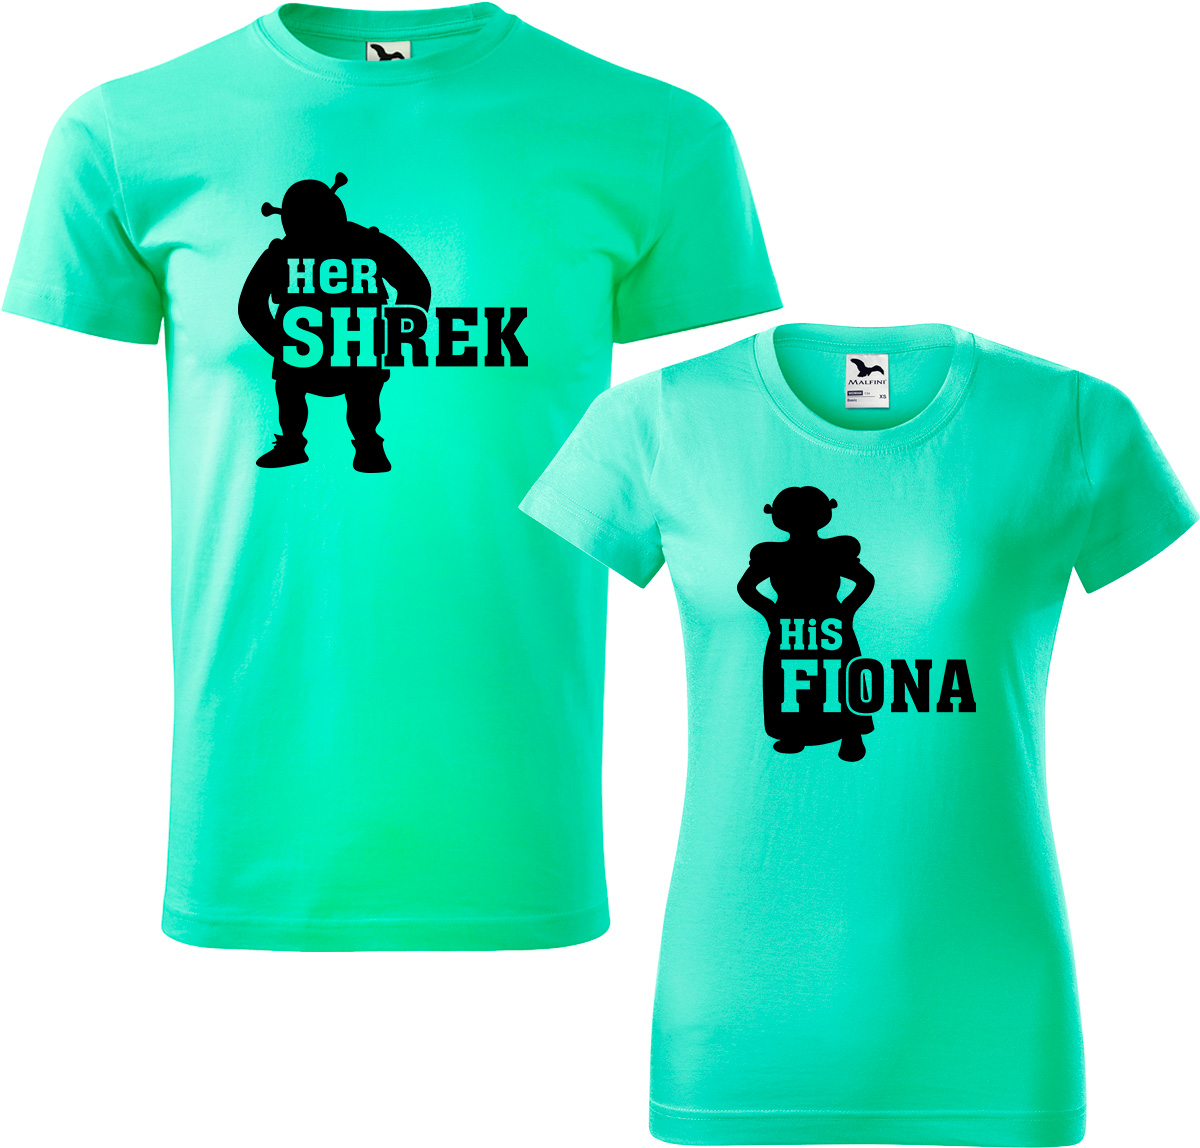 Trička pro páry - Shrek a Fiona Barva: Mátová (95), Velikost dámské tričko: L, Velikost pánské tričko: L